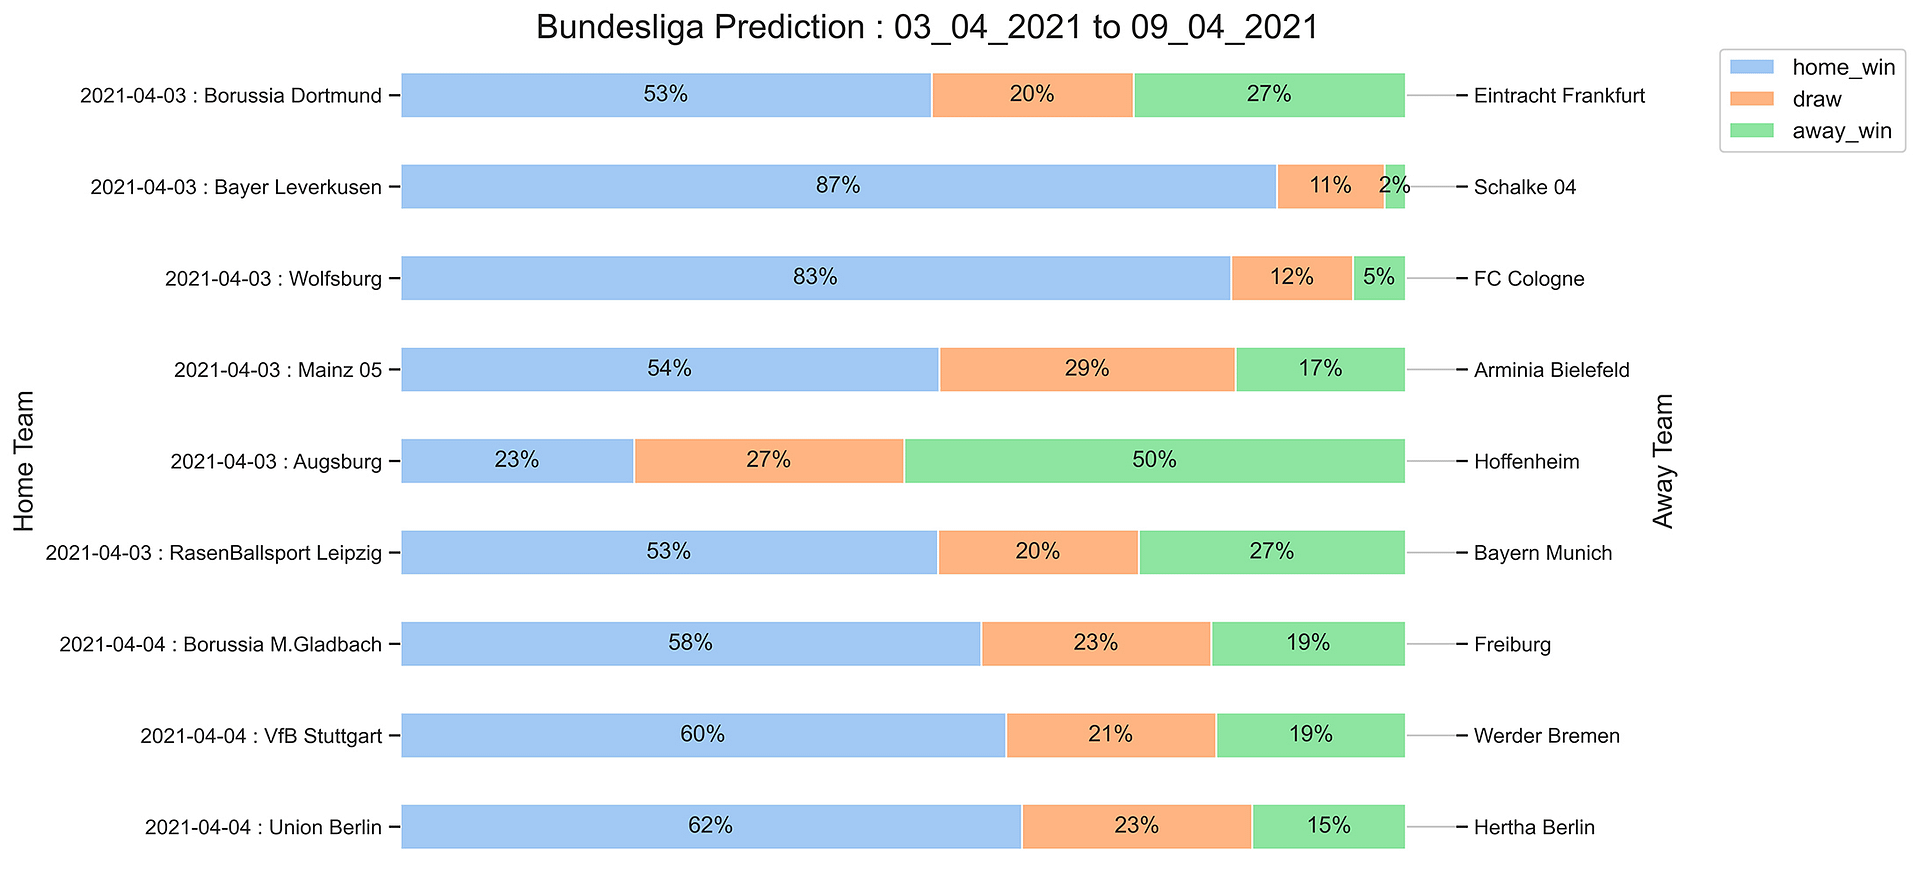 Bundesliga_Prediction 03_04_2021